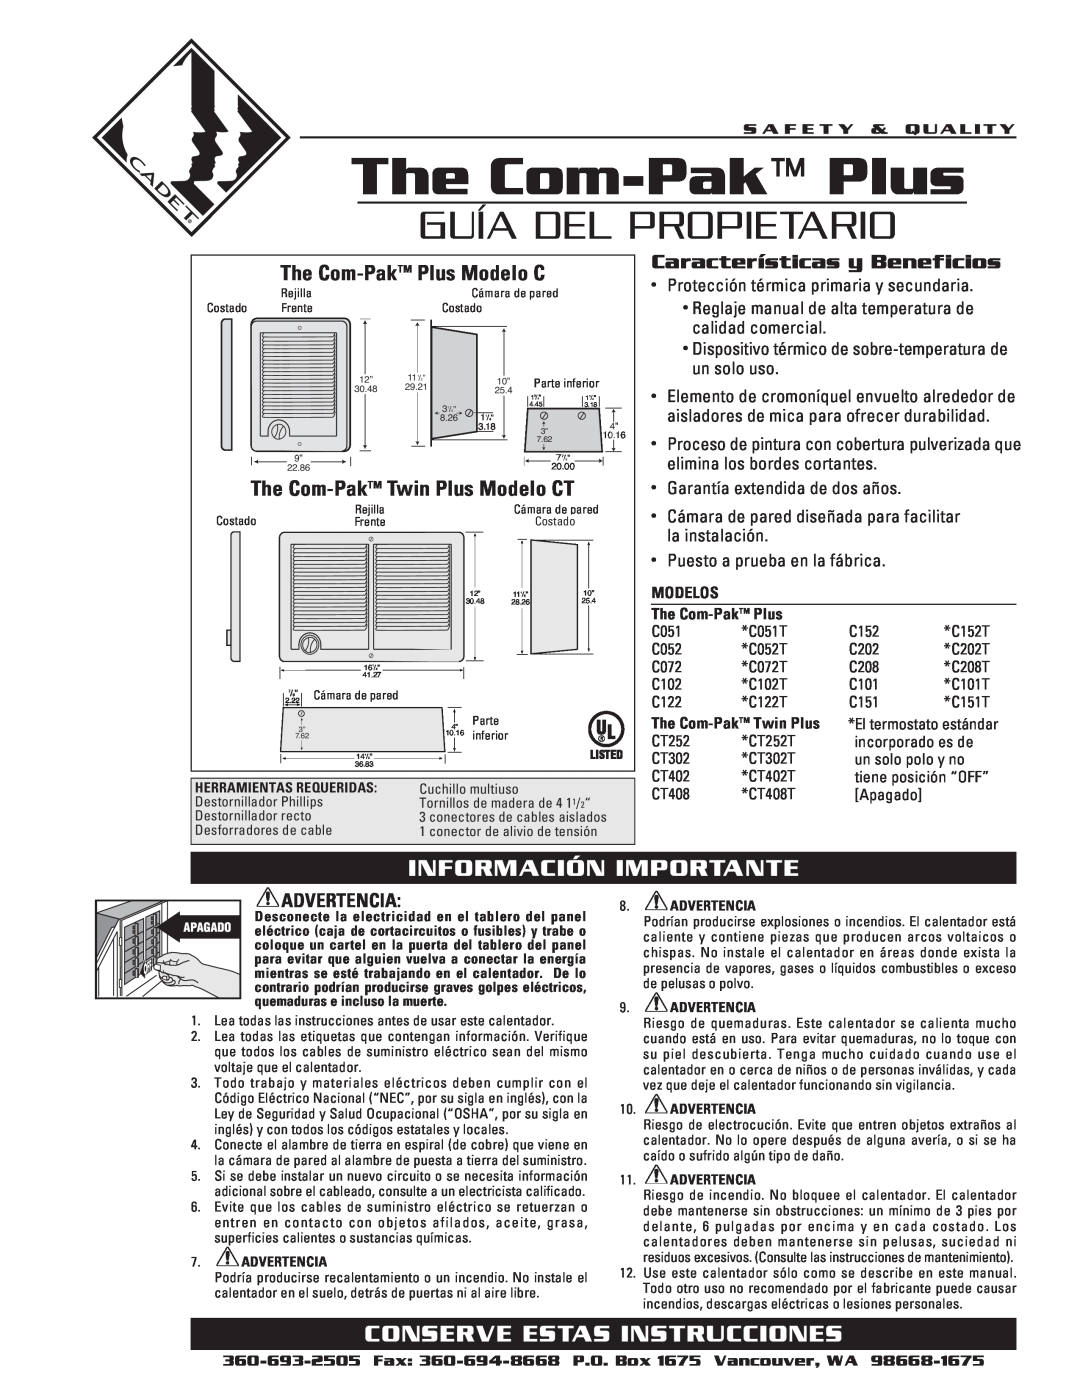 Cadet warranty The Com-PakPlus, Guía Del Propietario, Información Importante, Conserve Estas Instrucciones 